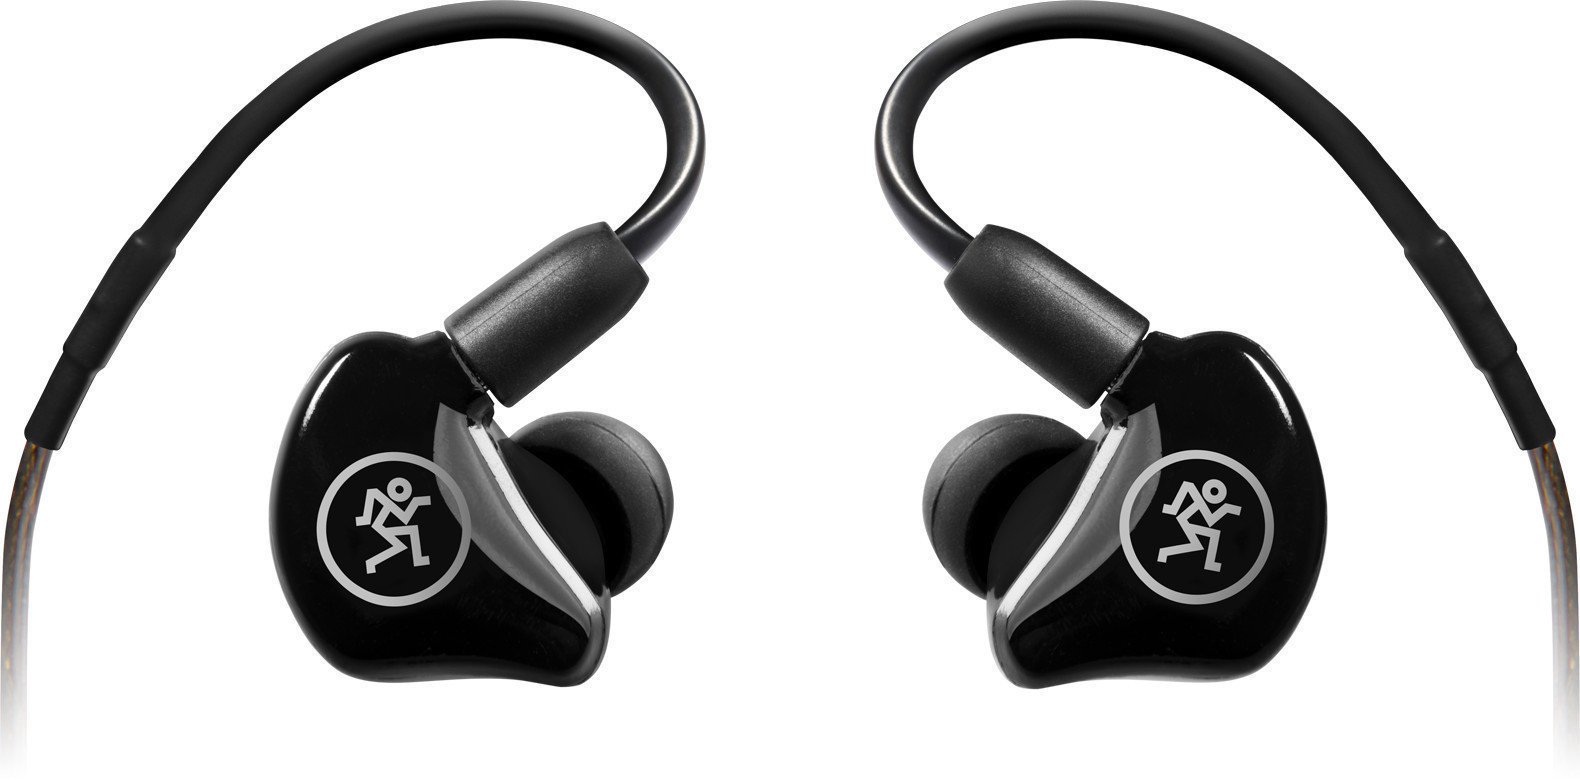 Ear Loop headphones Mackie MP-220 Black (Just unboxed)